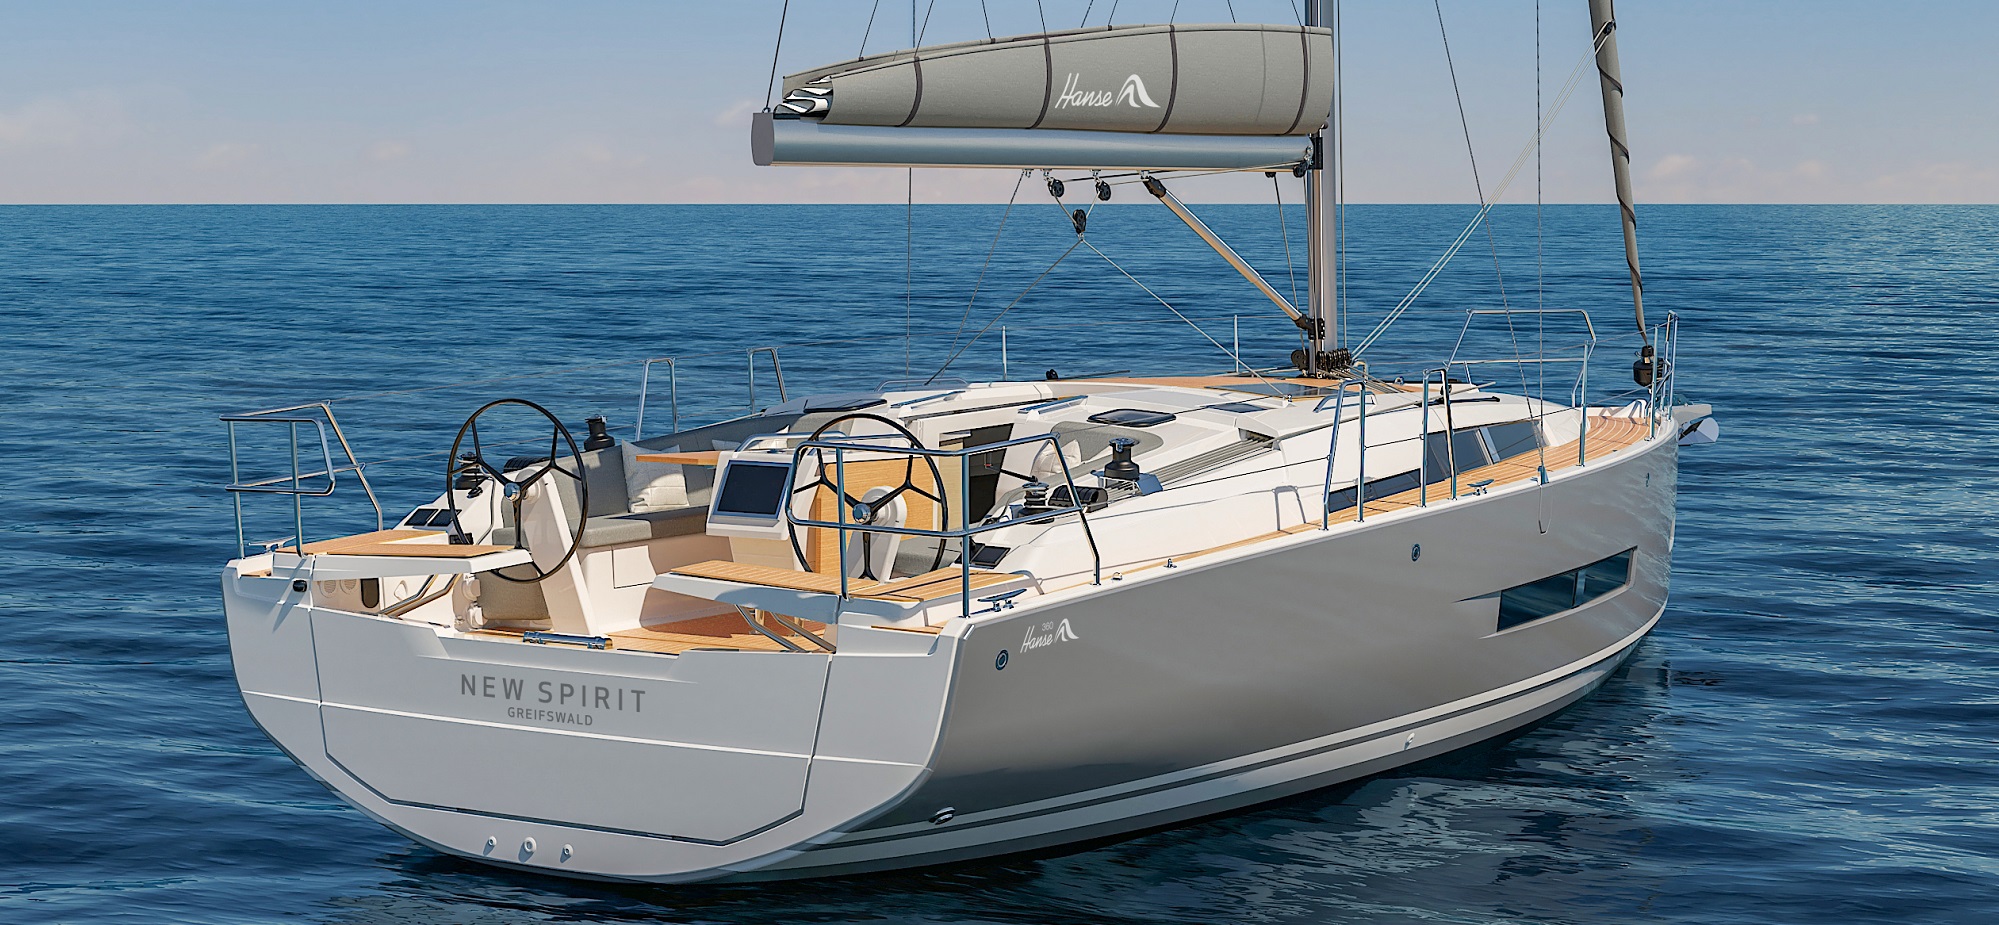 Die neue Hanse 360 – 39 Fuß purer Komfort und beeindruckendes Design